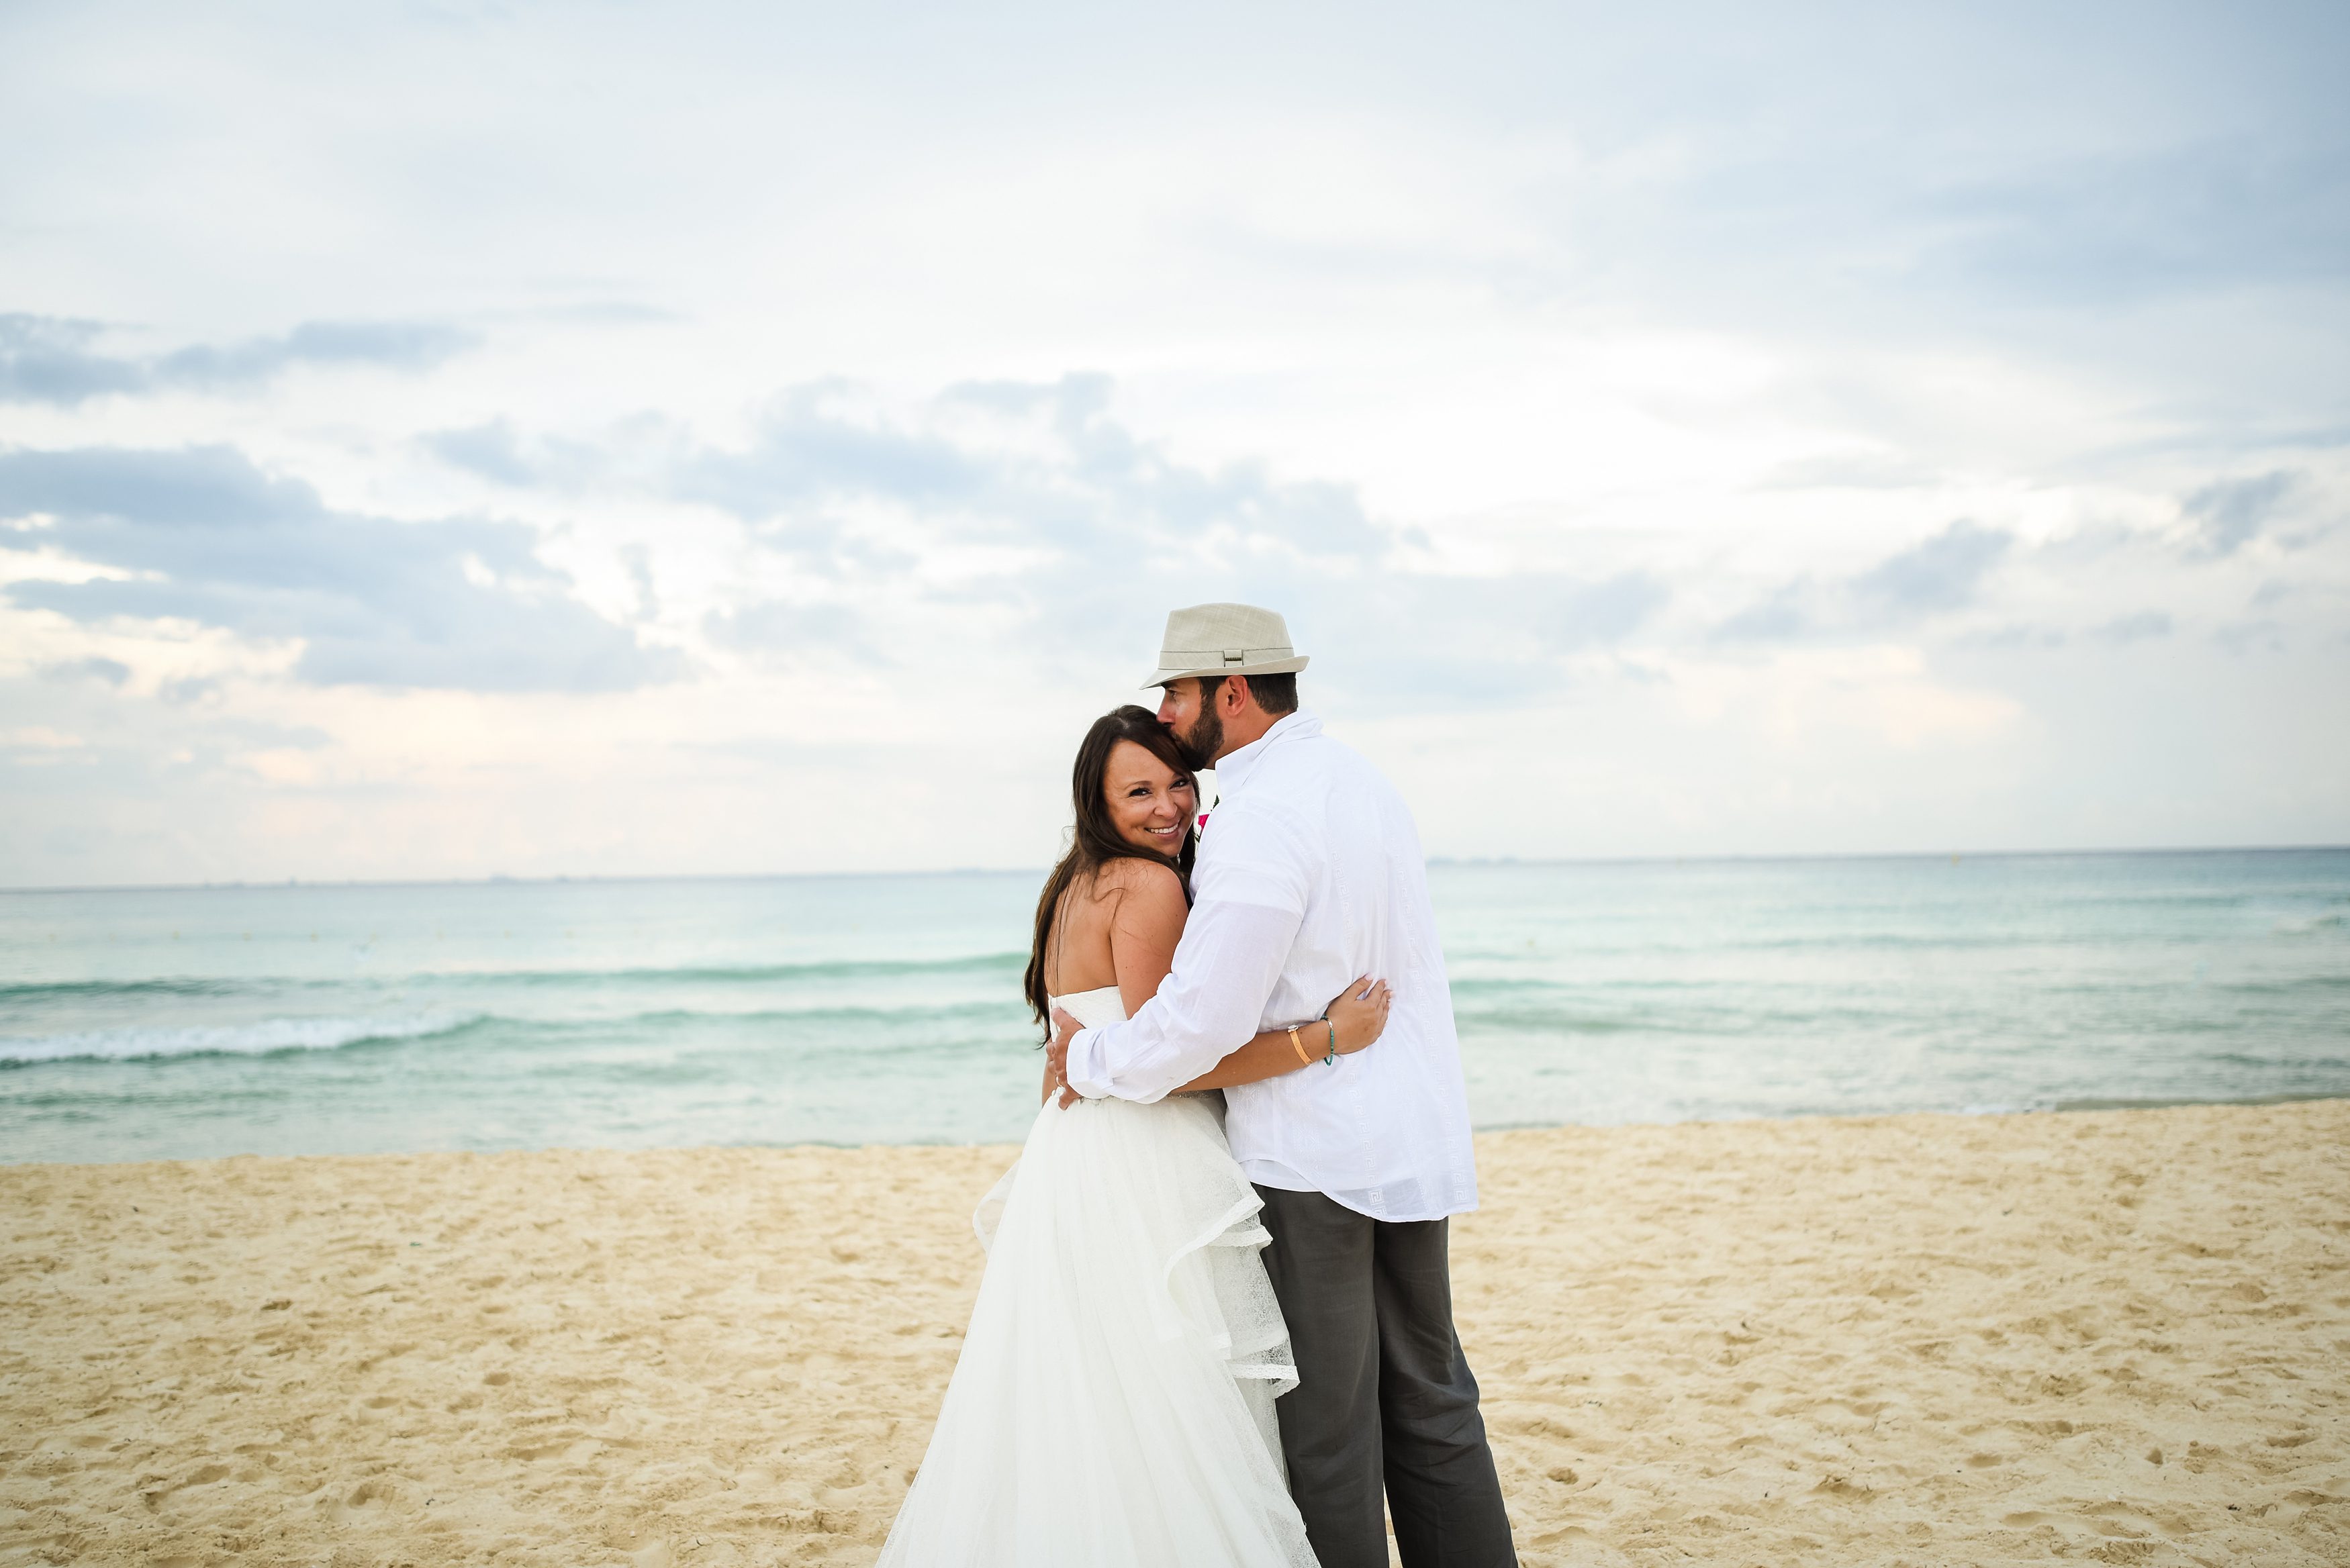 beach weddings, cancun weddings, destination weddings